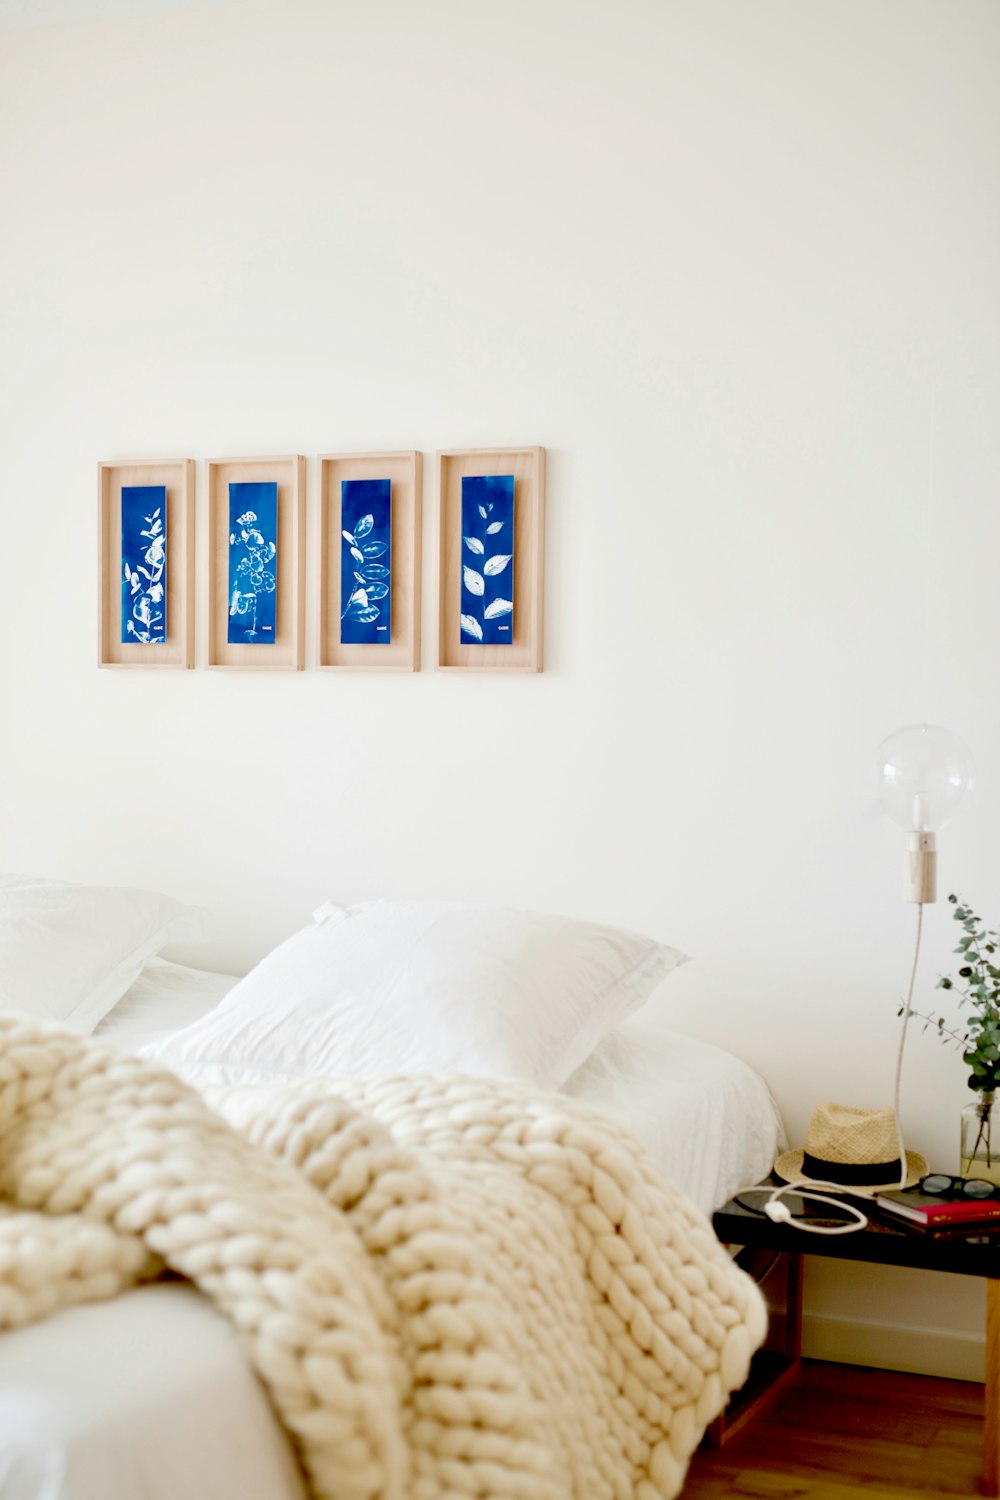 4-панельные картины с синими цветами на стене